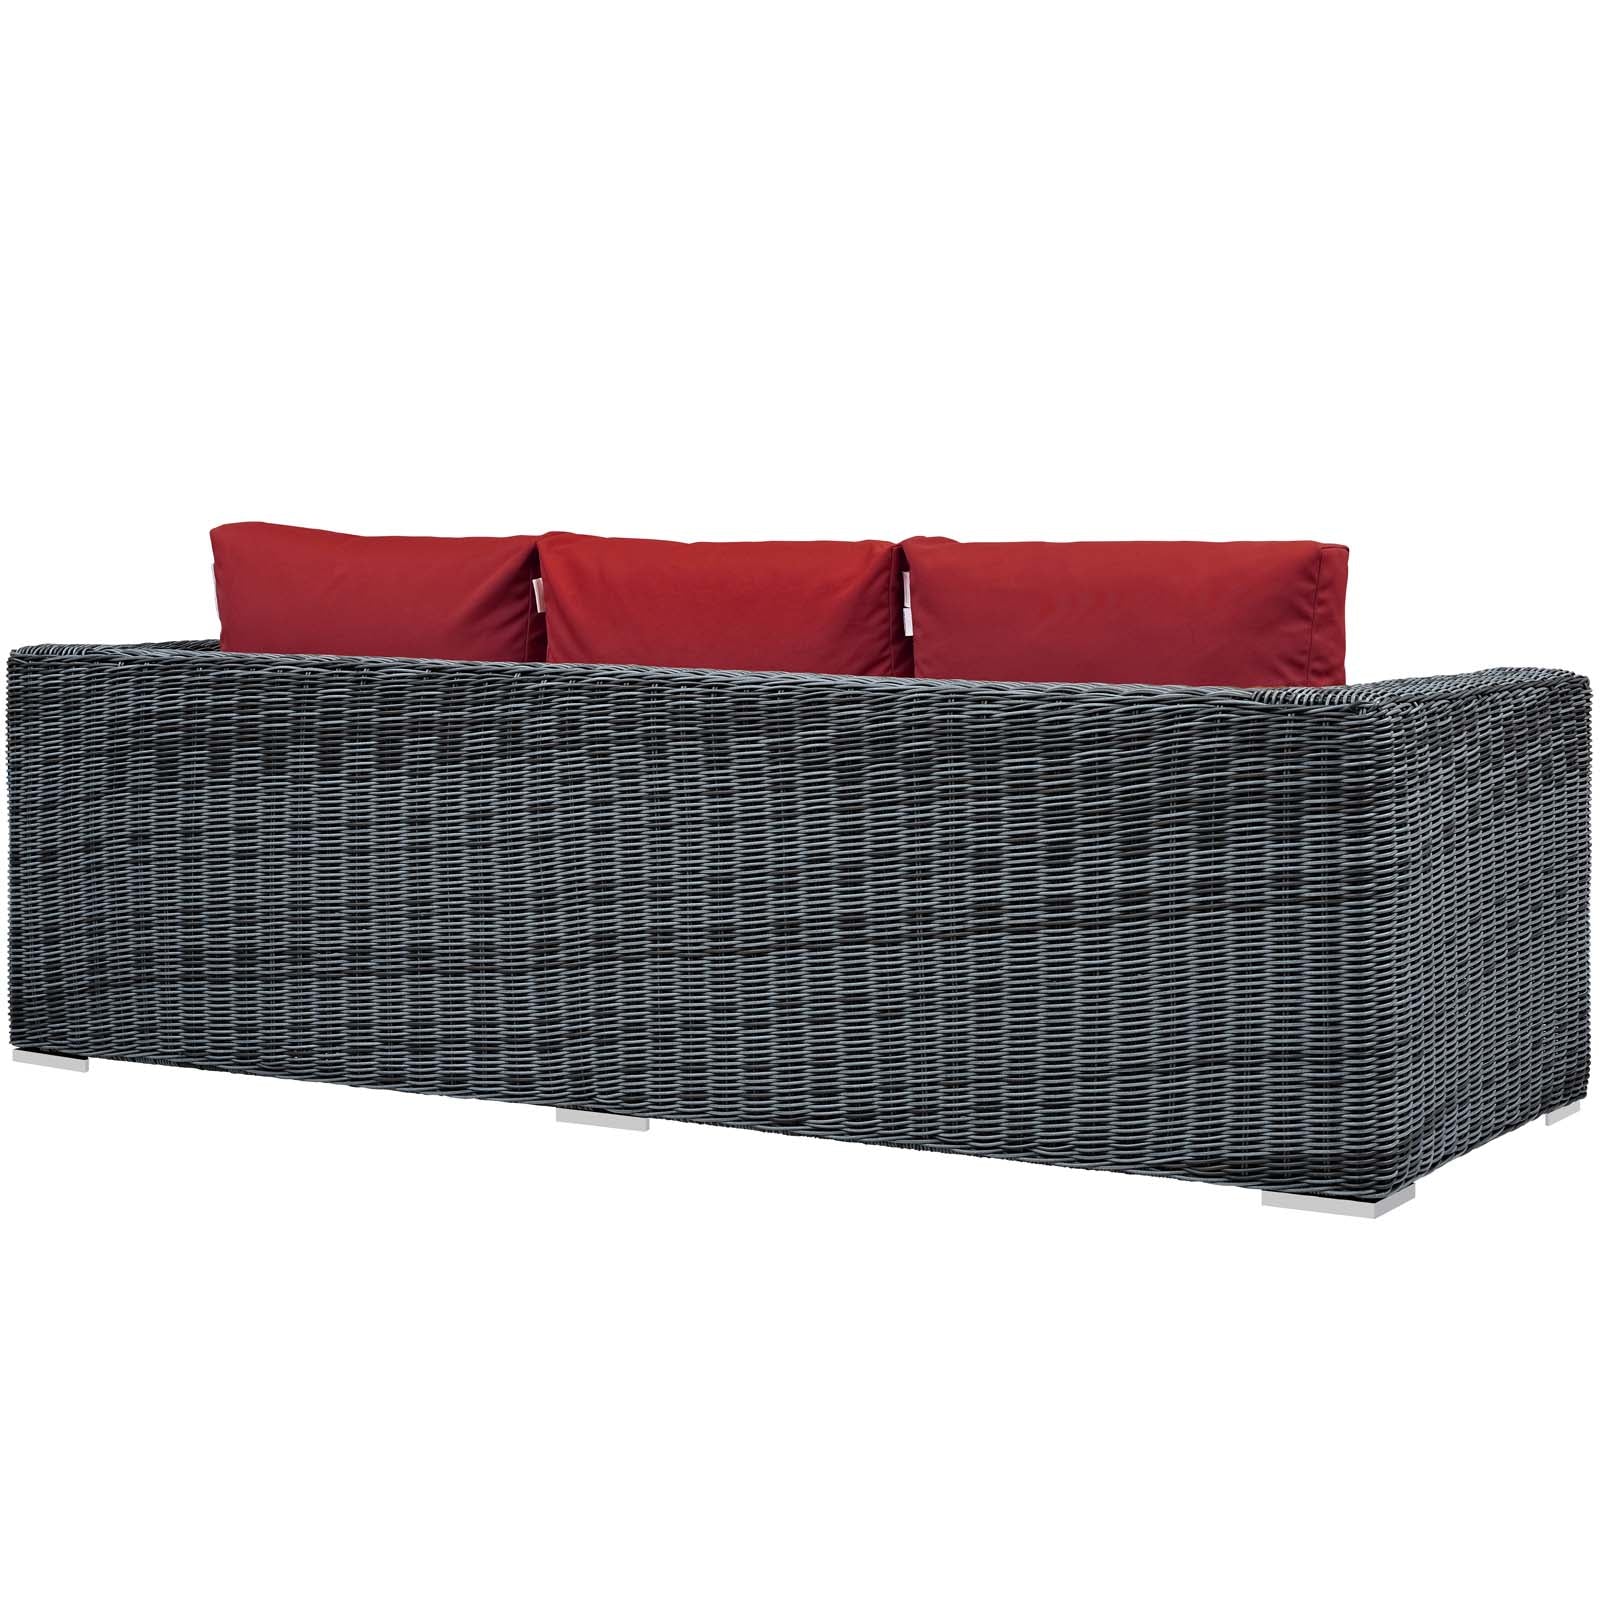 Modway Outdoor Sofas - Summon Outdoor Patio Sunbrella Sofa Canvas Red